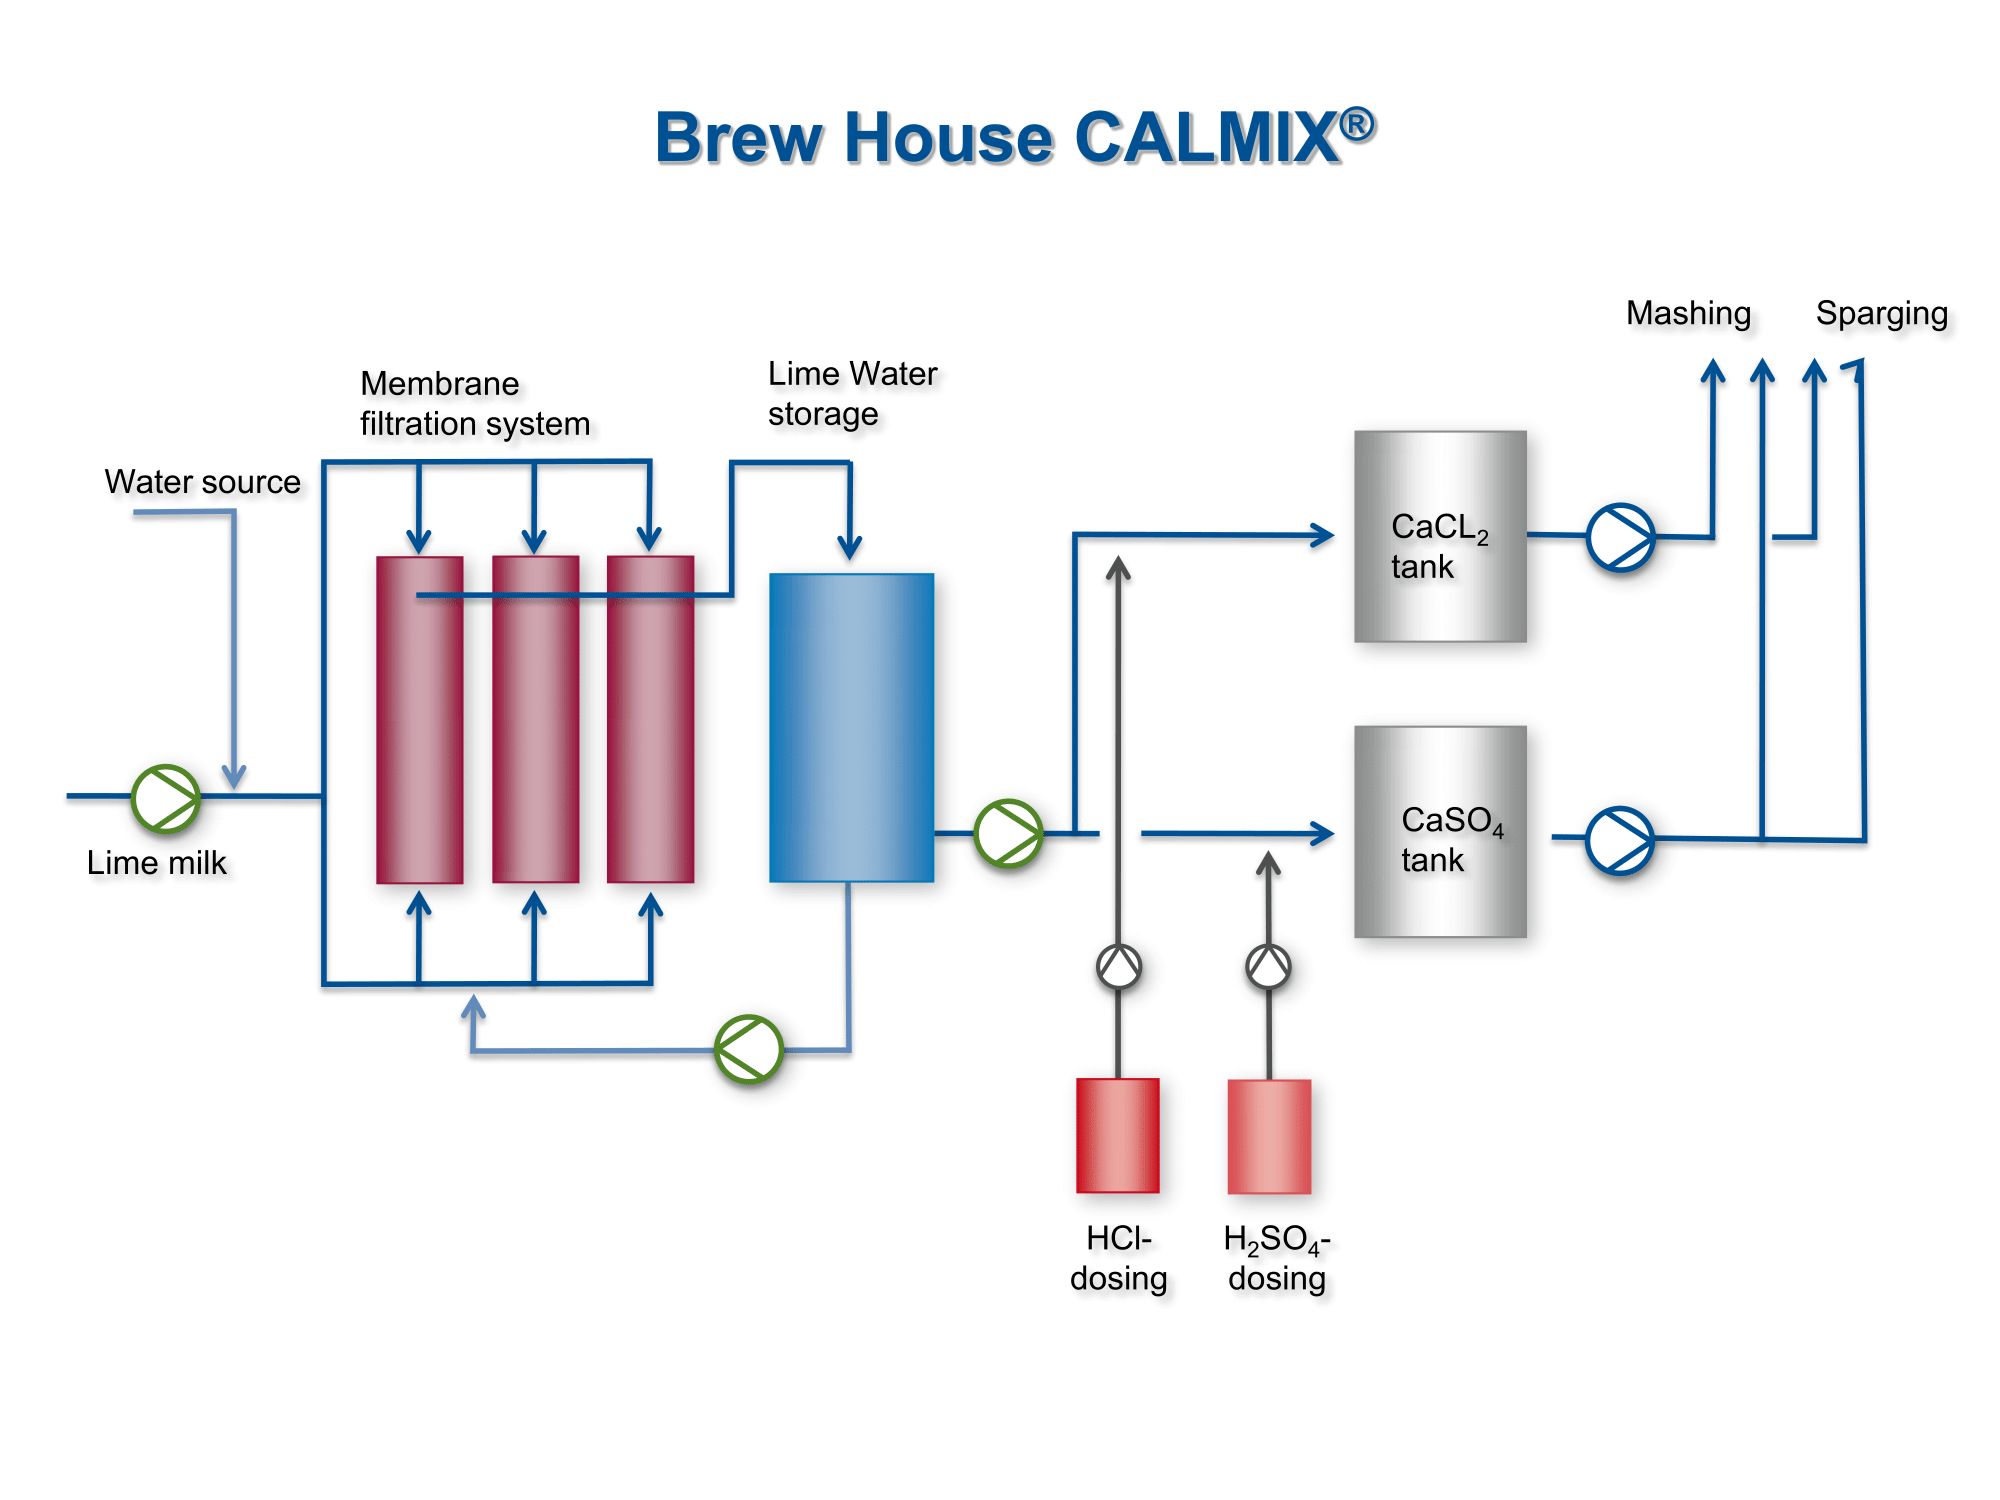 Mit  dem CALMIX®-Verfahren  eröffnet  EUWA  der  Brauindustrie neue  Möglichkeiten,  um  die  Wasserqualität  auf  die Bedürfnisse von spezifischen Biermarken bzw. Biertypen maßzuschneidern